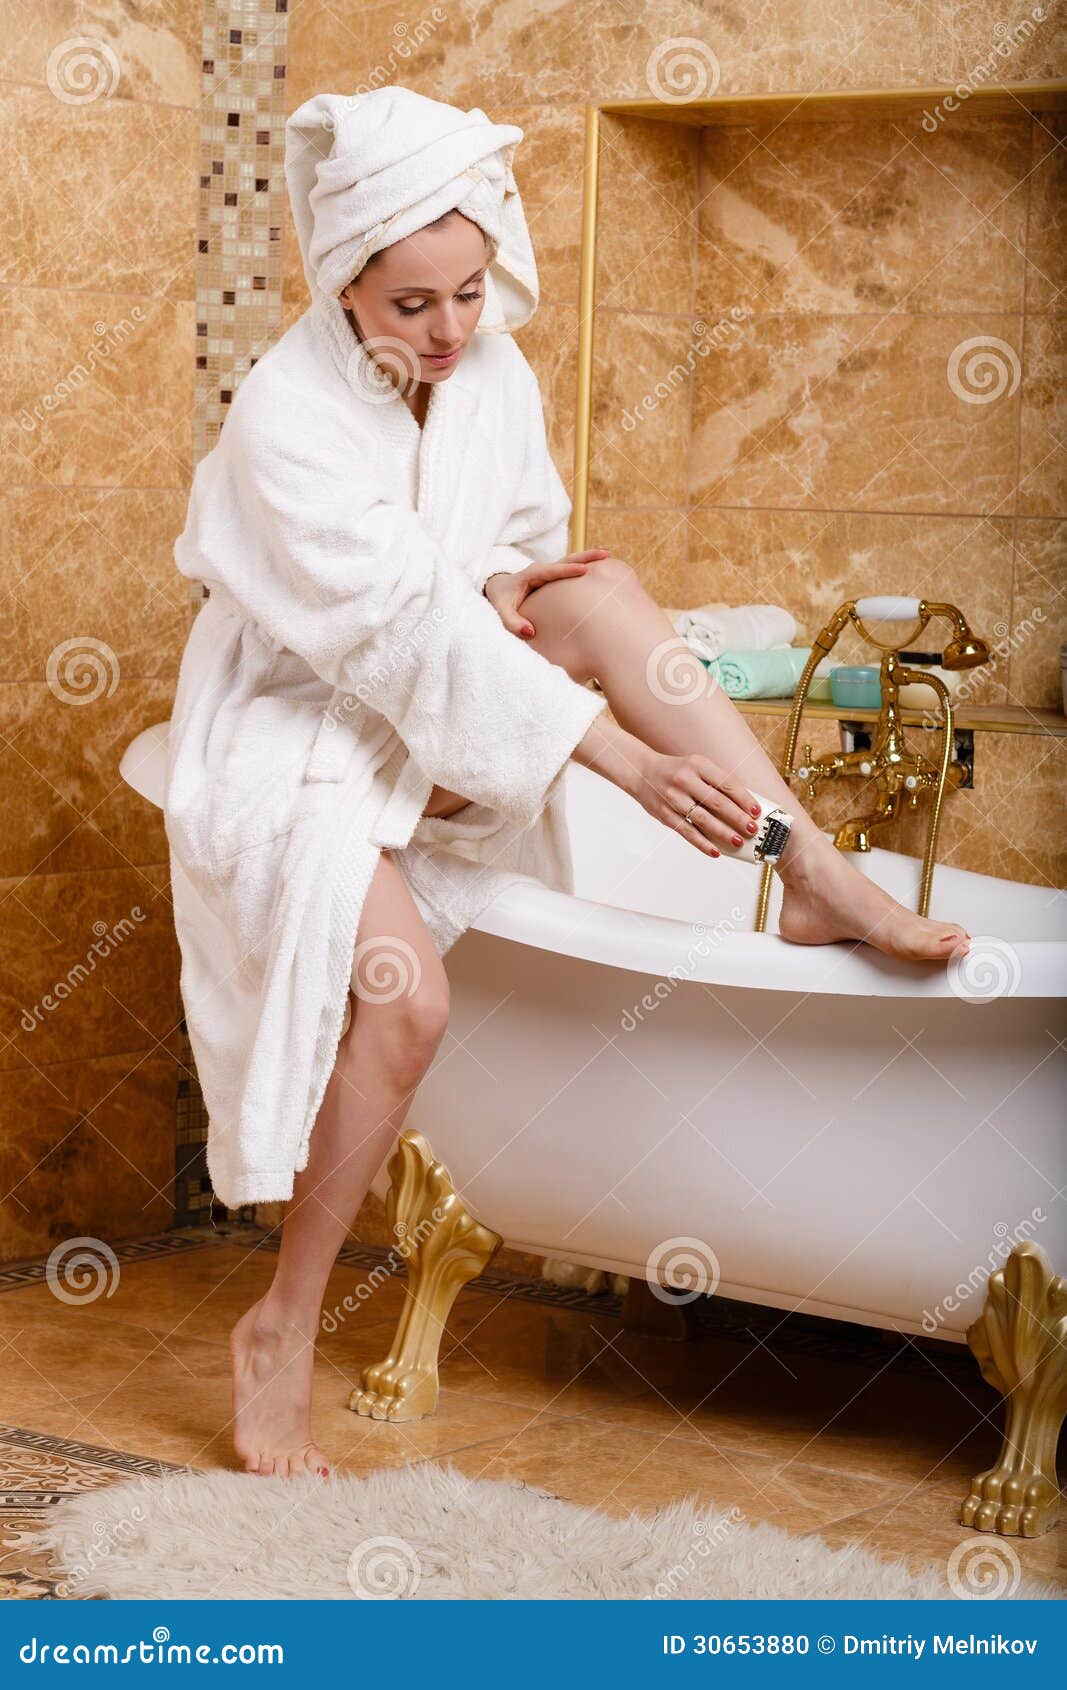 Соблазняет после душа. Девушка в халате в ванной. Женщина в халате в ванной. Женщина в полотенце. Халат в ванной комнате.